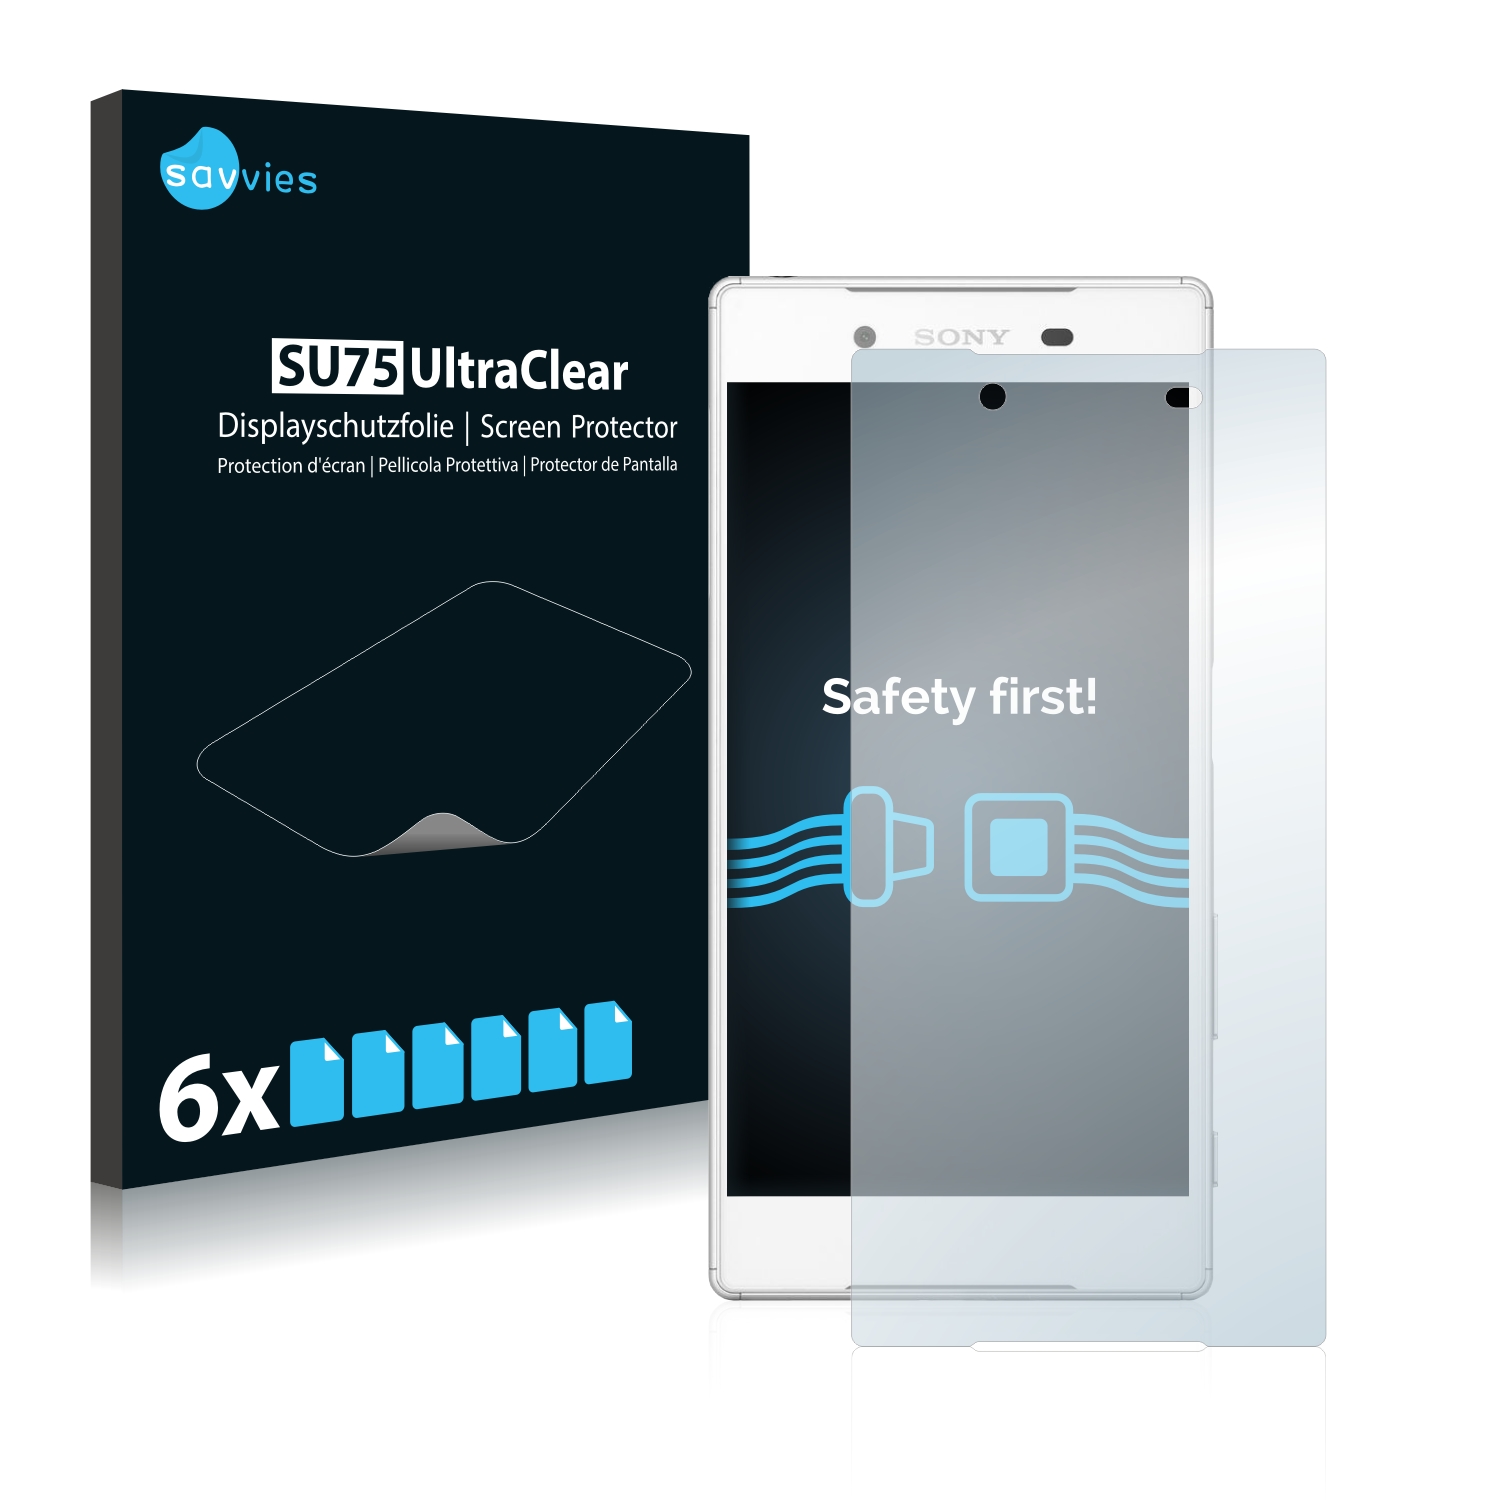 6x Savvies SU75 čirá ochranná fólie pro Sony Xperia Z5